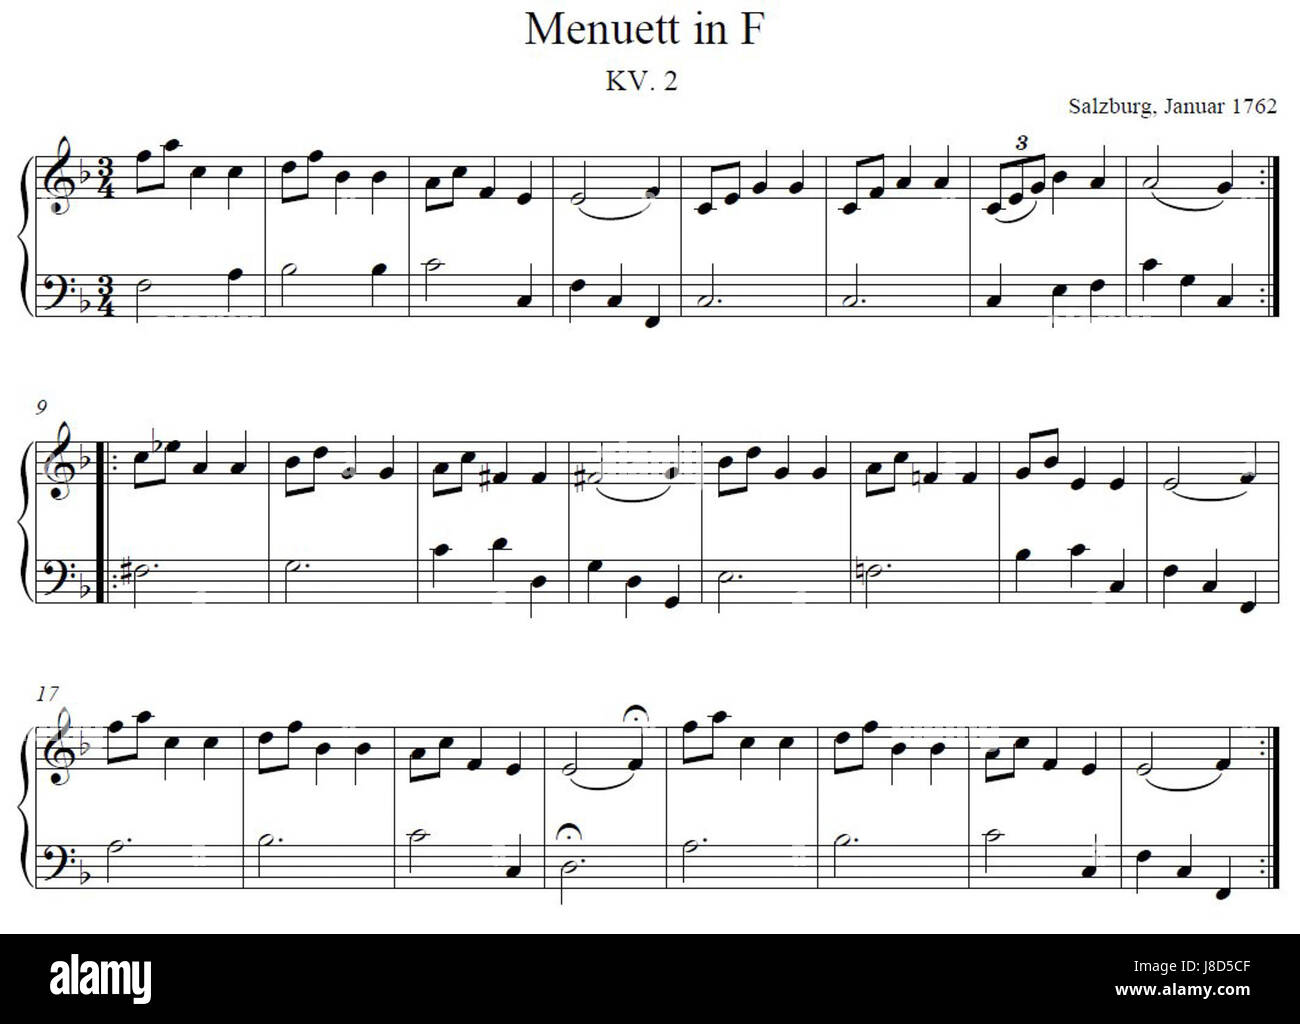 Моцарт фа мажор ноты. Менуэт Моцарт Ноты. Моцарт Менуэт фа мажор. Моцарт Менуэт Ноты для фортепиано для начинающих. Менуэт Моцарт Ноты для фортепиано.